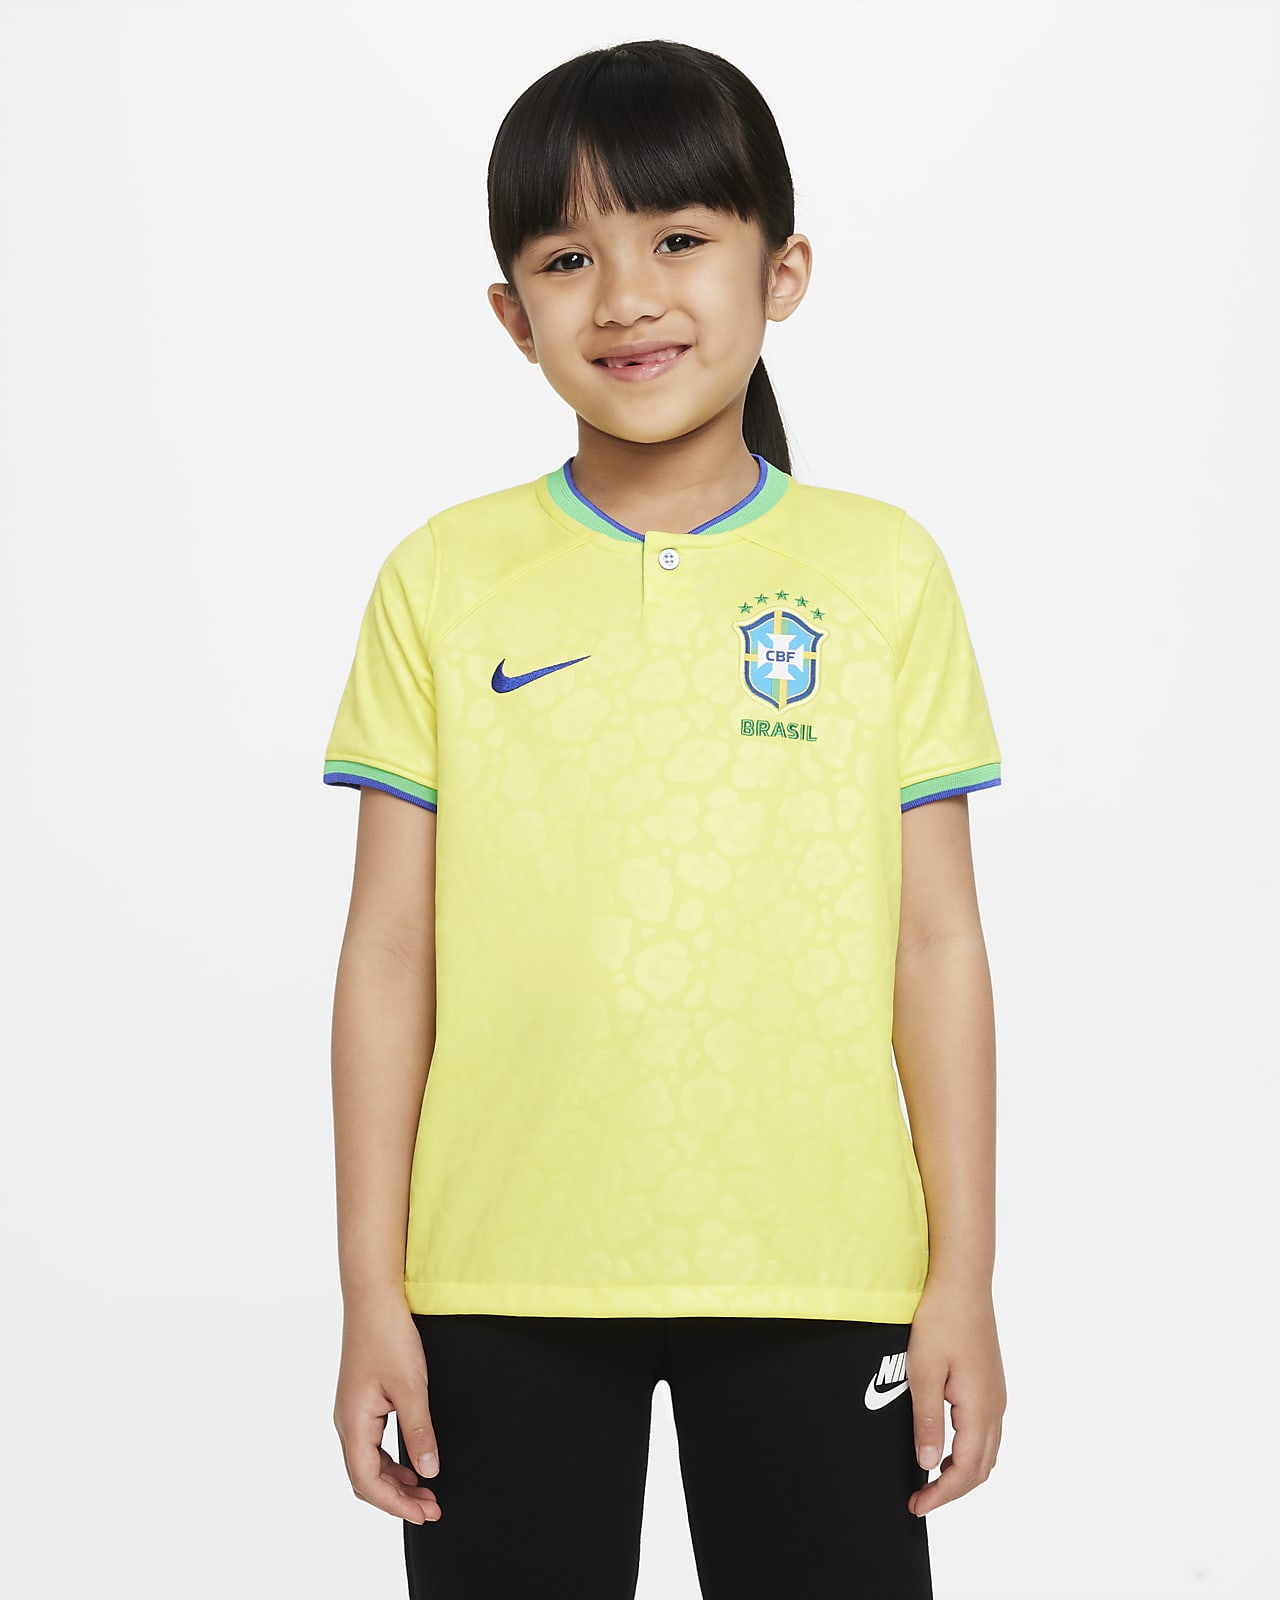 2022/23 Little Kids' Nike Dri-FIT Soccer Jersey. Nike.com